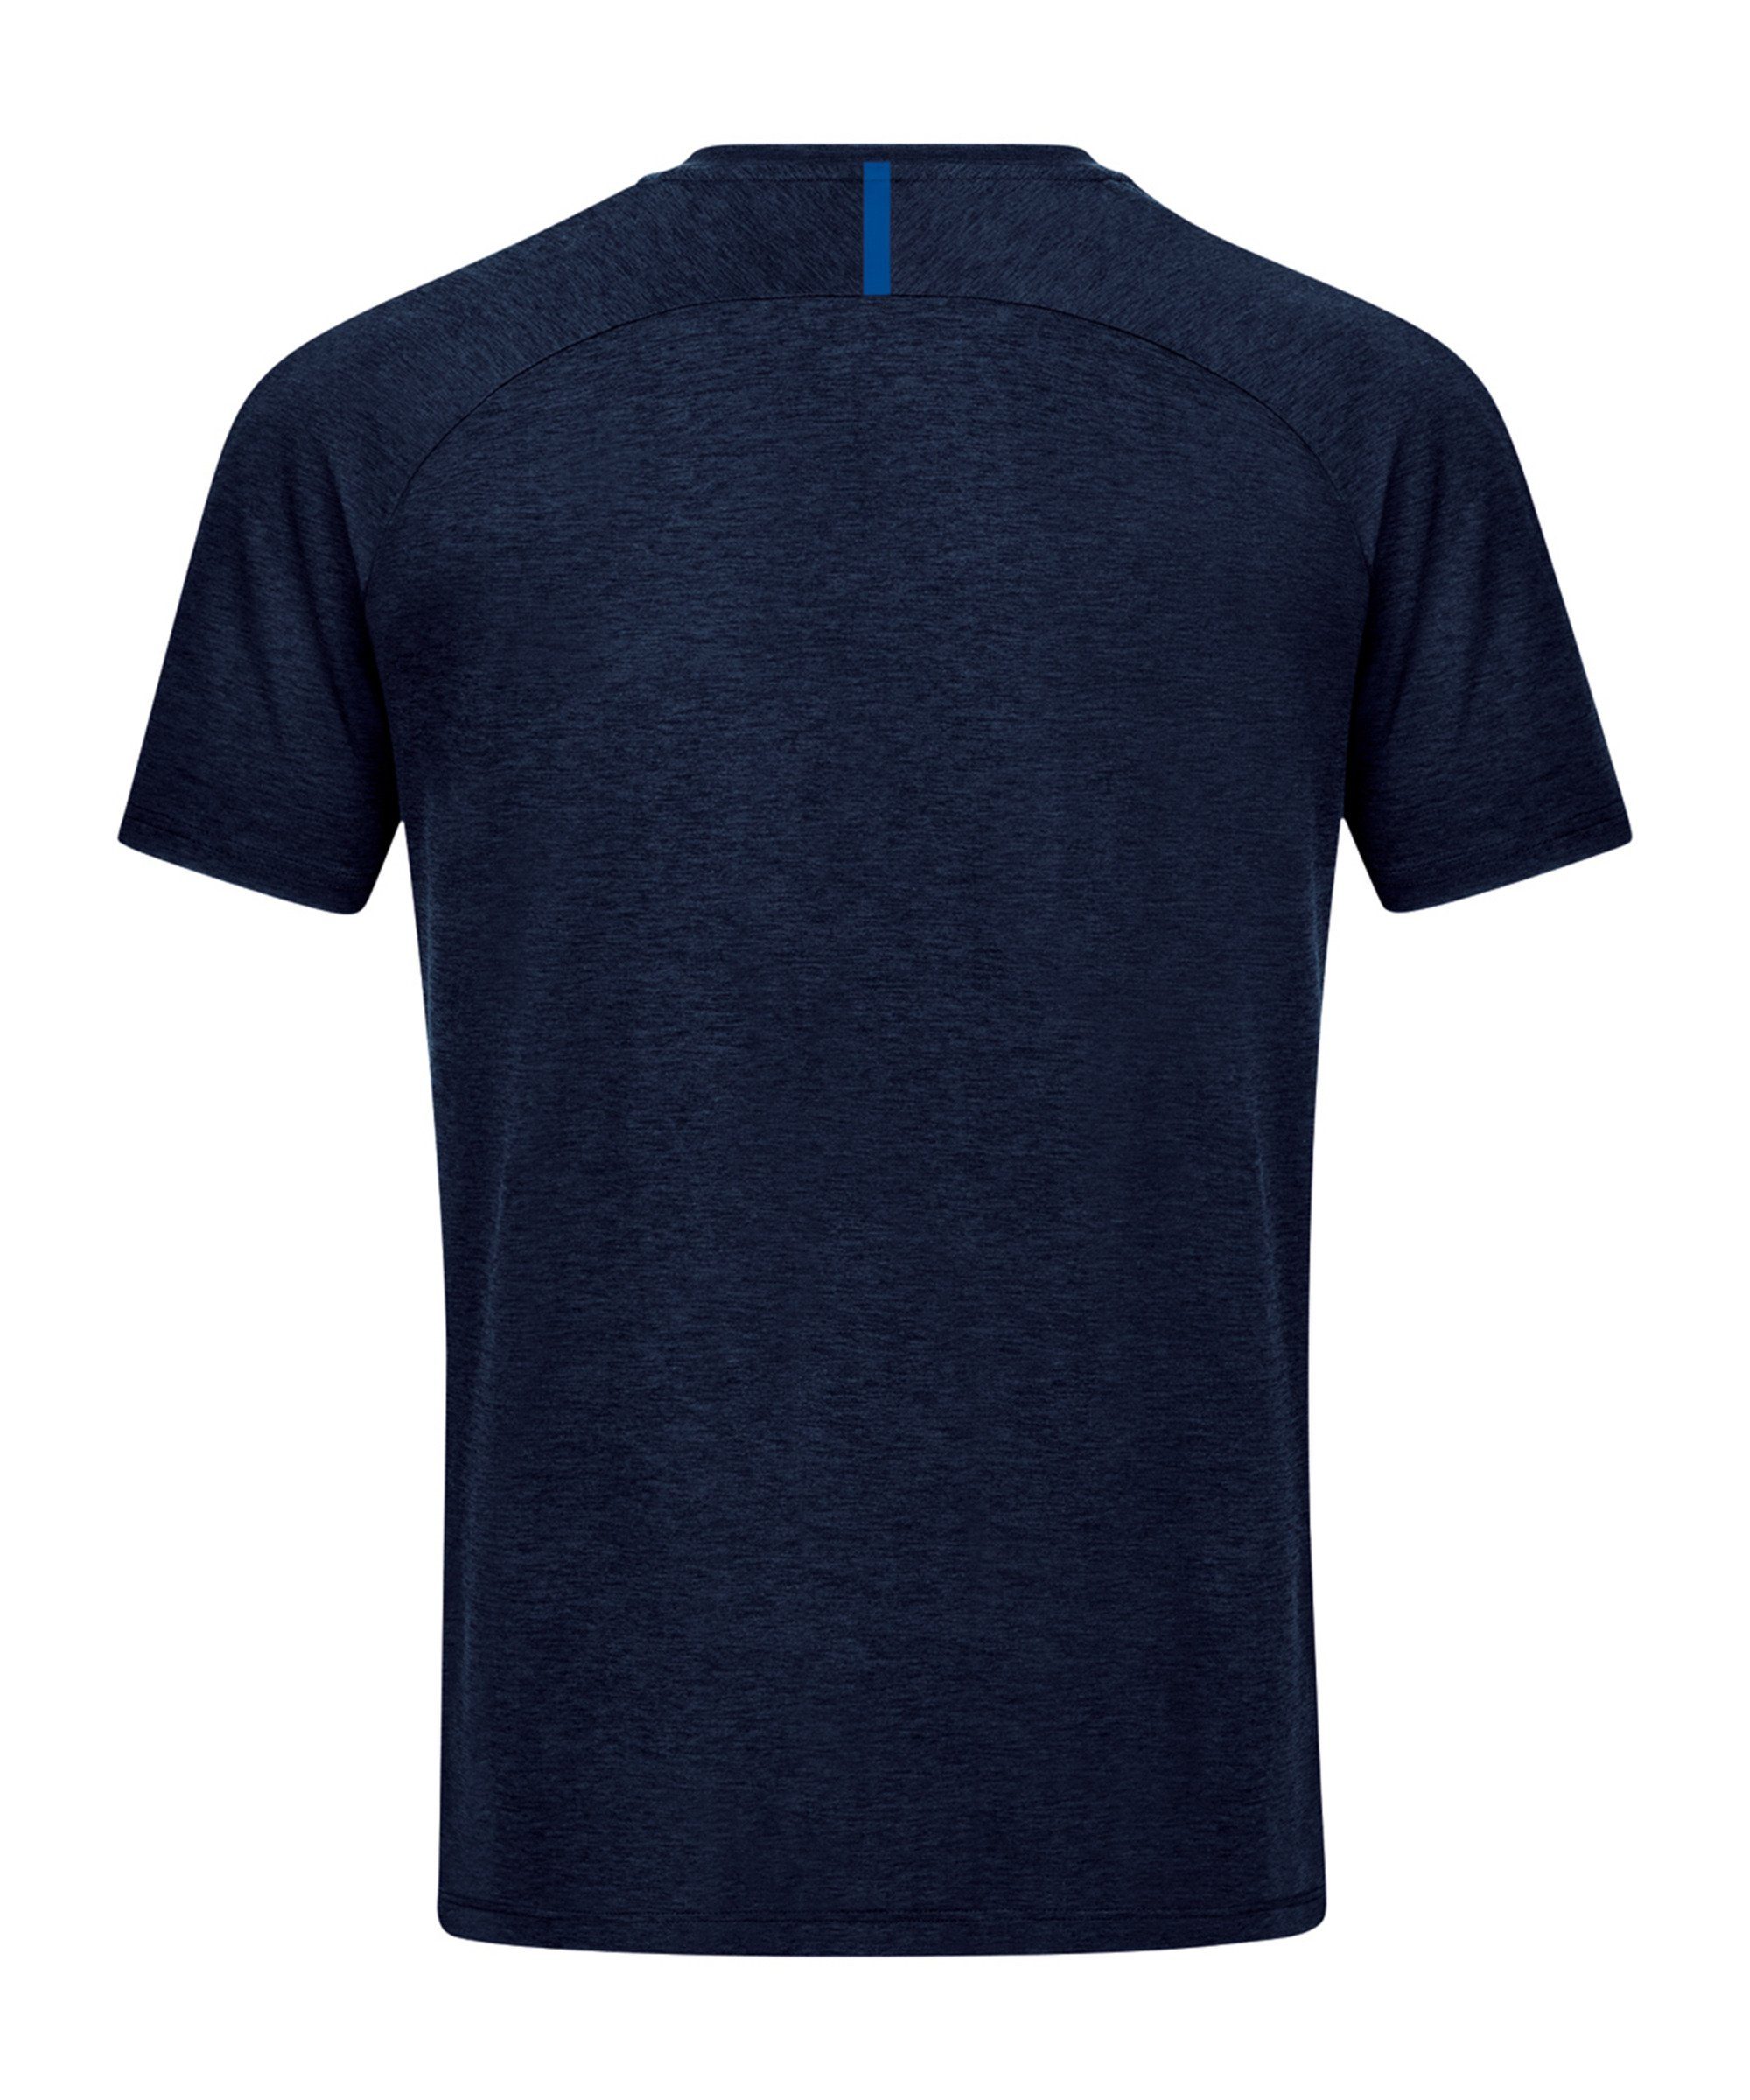 Jako T-Shirt default blaublau Freizeit T-Shirt Challenge